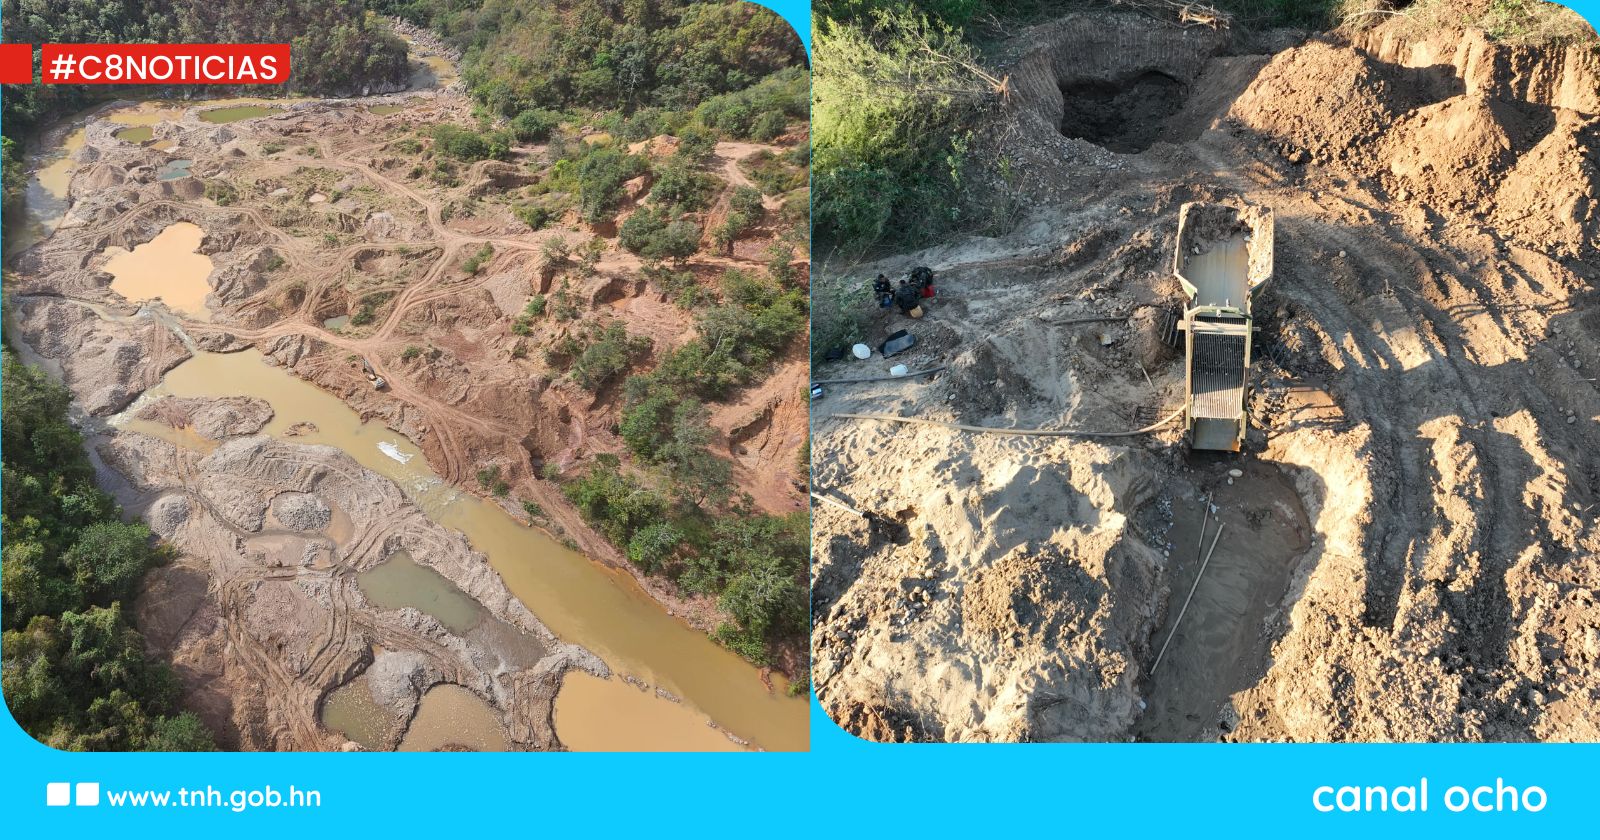 ICF registra daño ambiental en el río Guayape por explotación minera ilegal